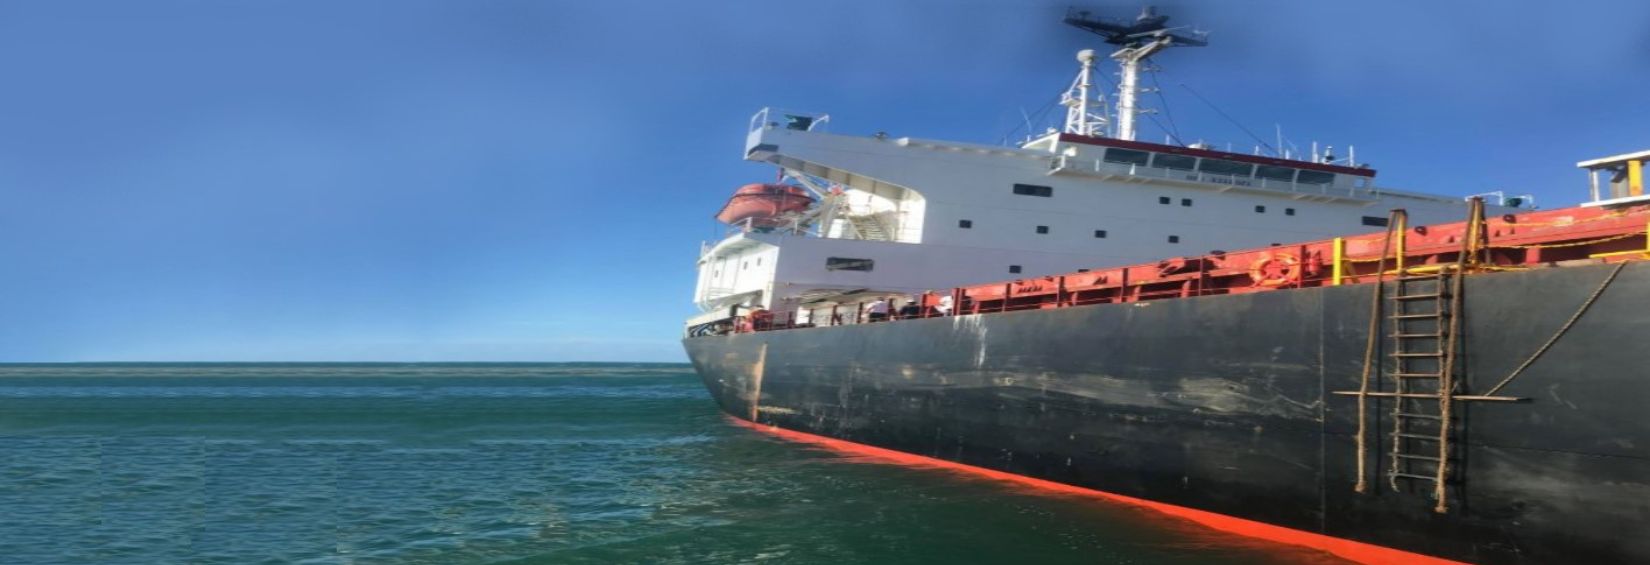 Crew Transfer Vessel & Ship Launch Service